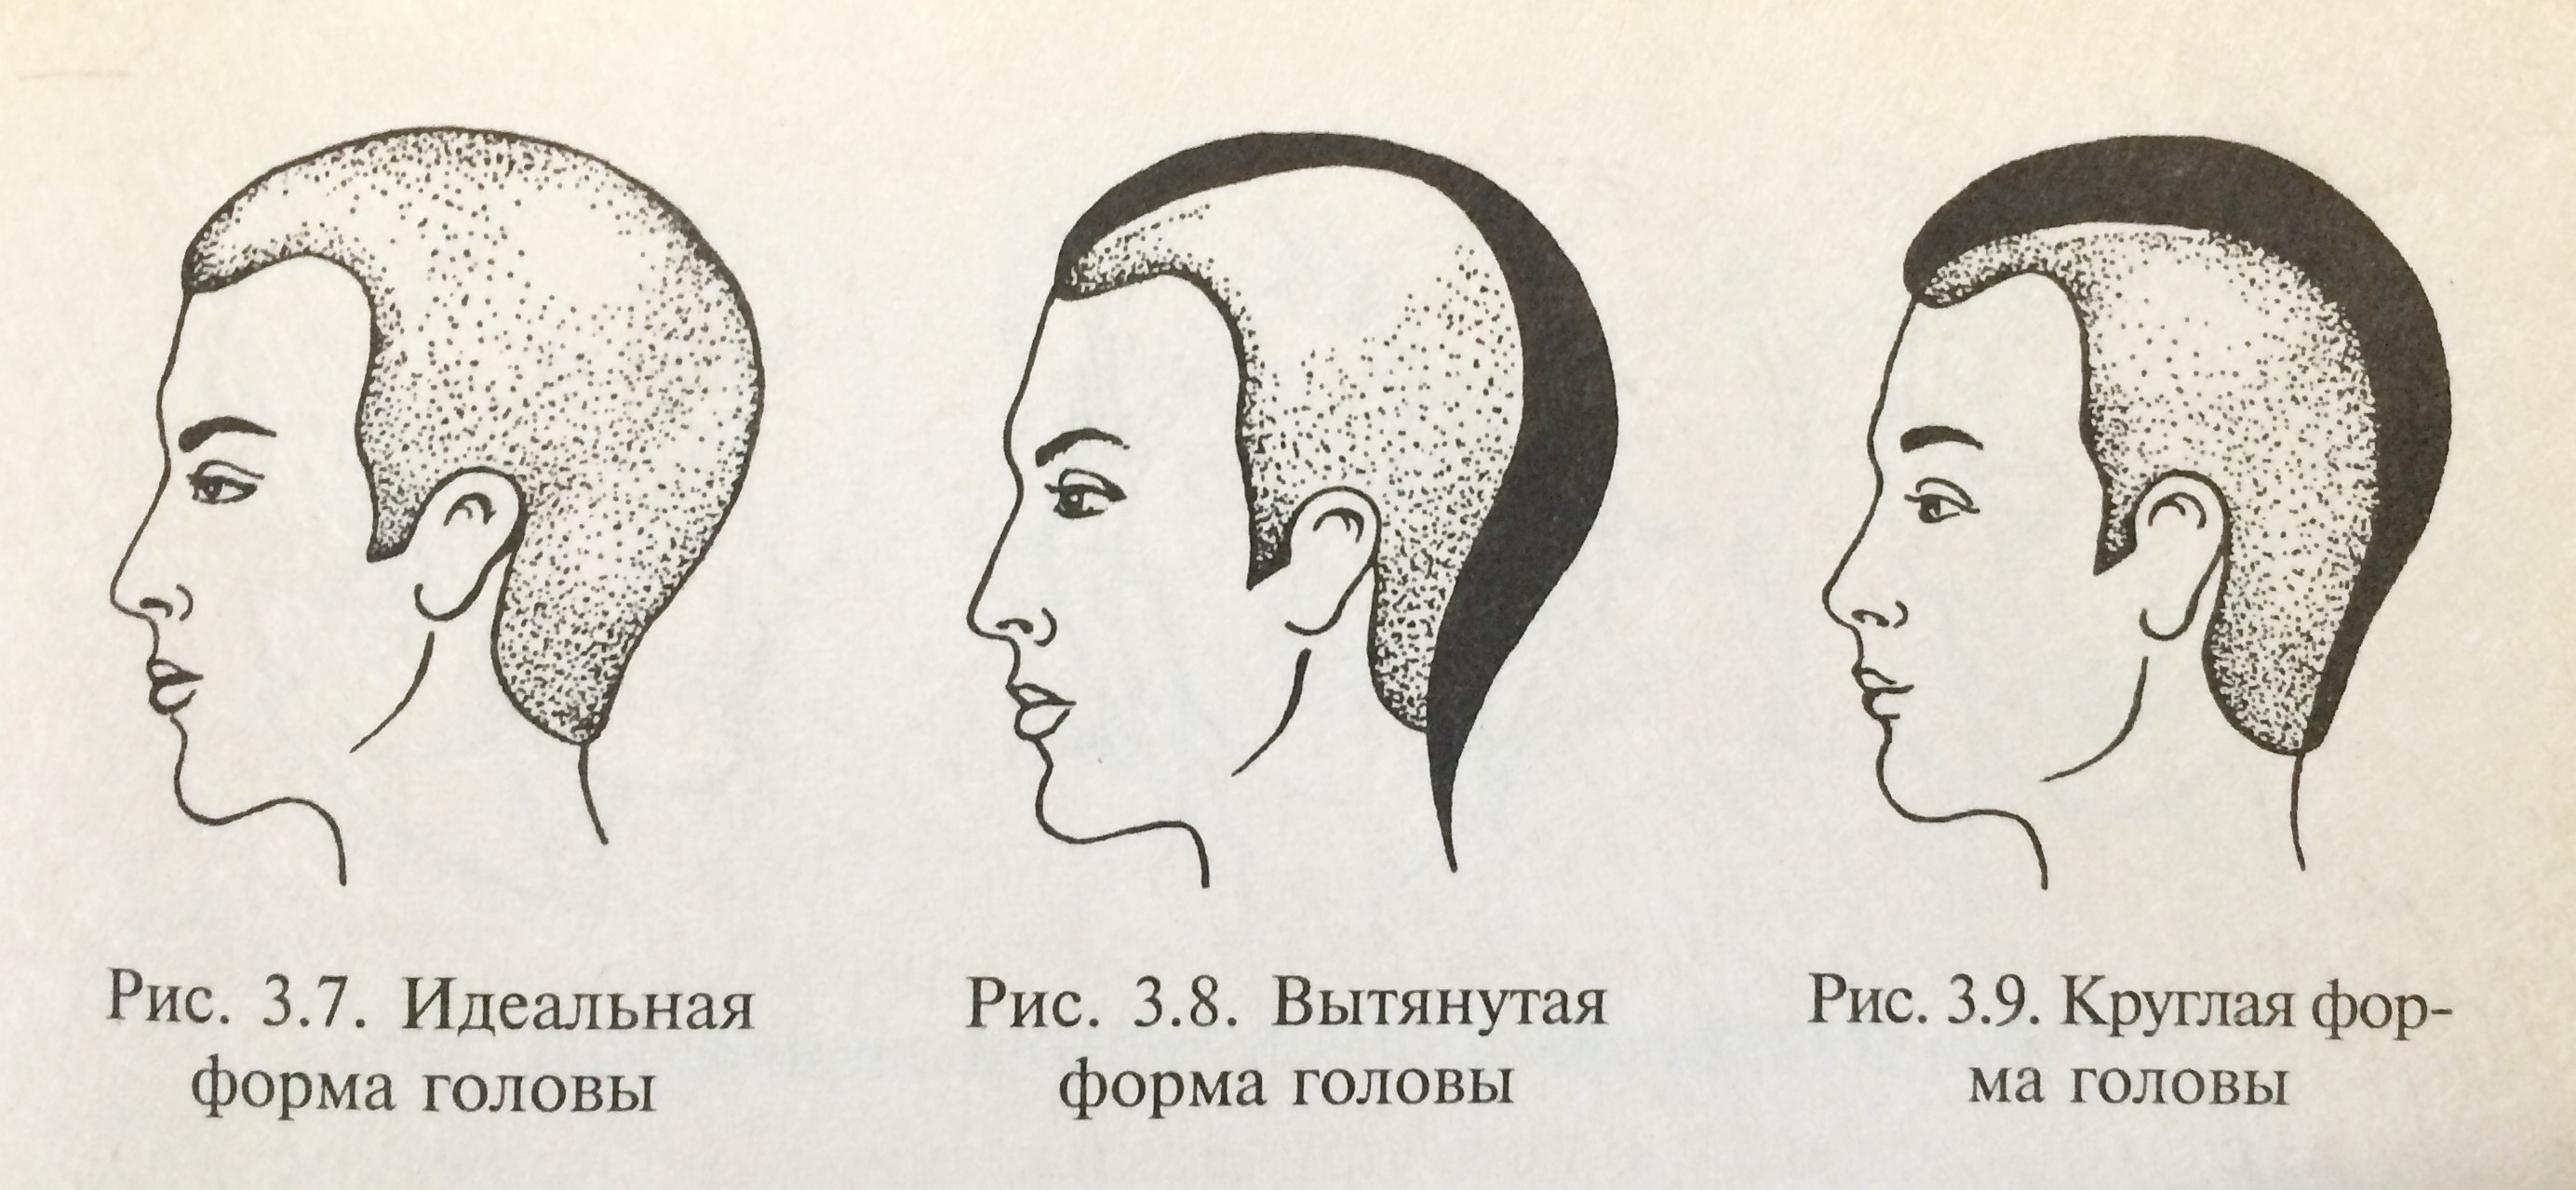 Округлая форма головы. Формы черепа и прически. Удлиненная форма головы. Идеальная форма затылка.